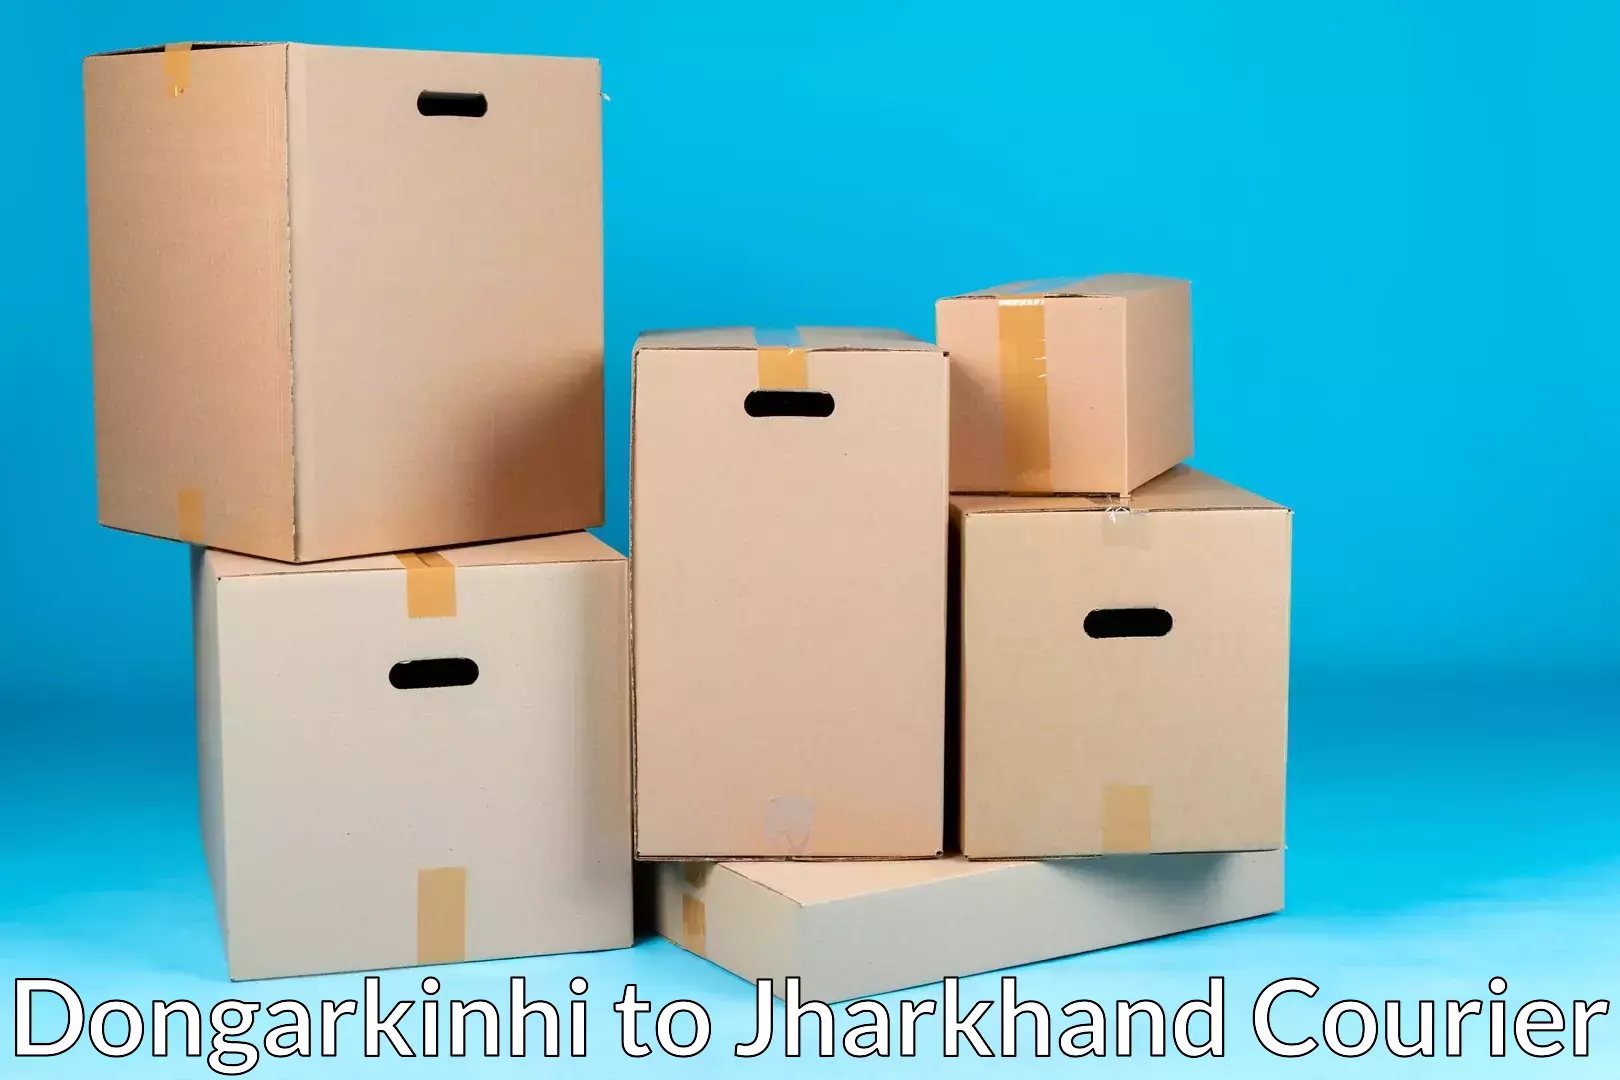 Quality moving company Dongarkinhi to Dhalbhumgarh